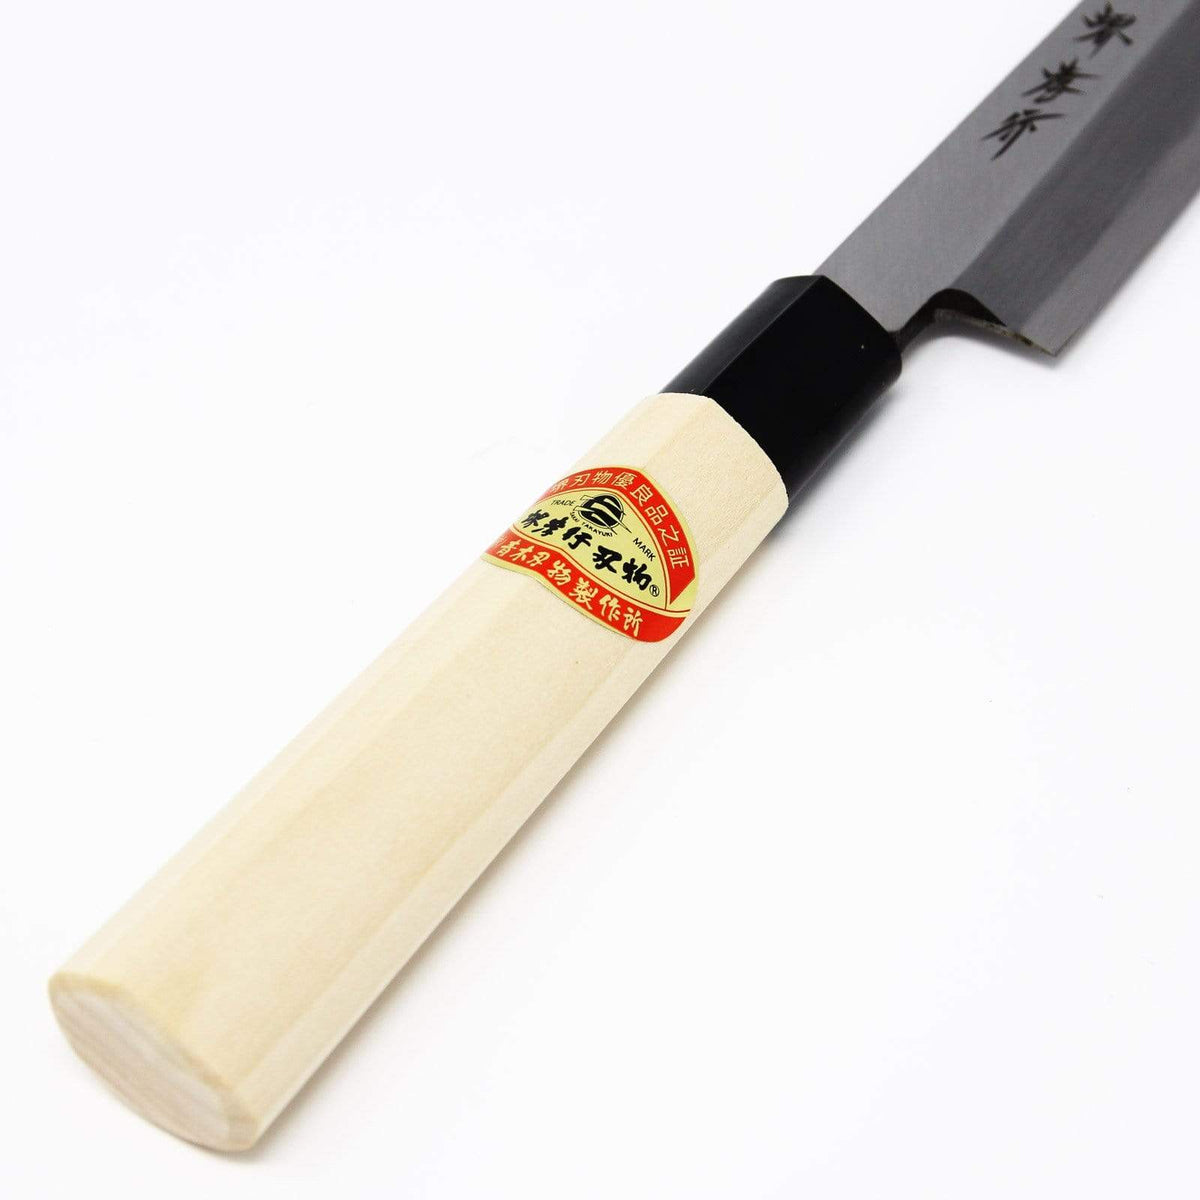 https://www.globalkitchenjapan.com/cdn/shop/products/sakai-takayuki-kasumitogi-shirogami-carbon-steel-yanagiba-knife-yanagiba-knives-3780130373715_1200x.jpg?v=1564030862